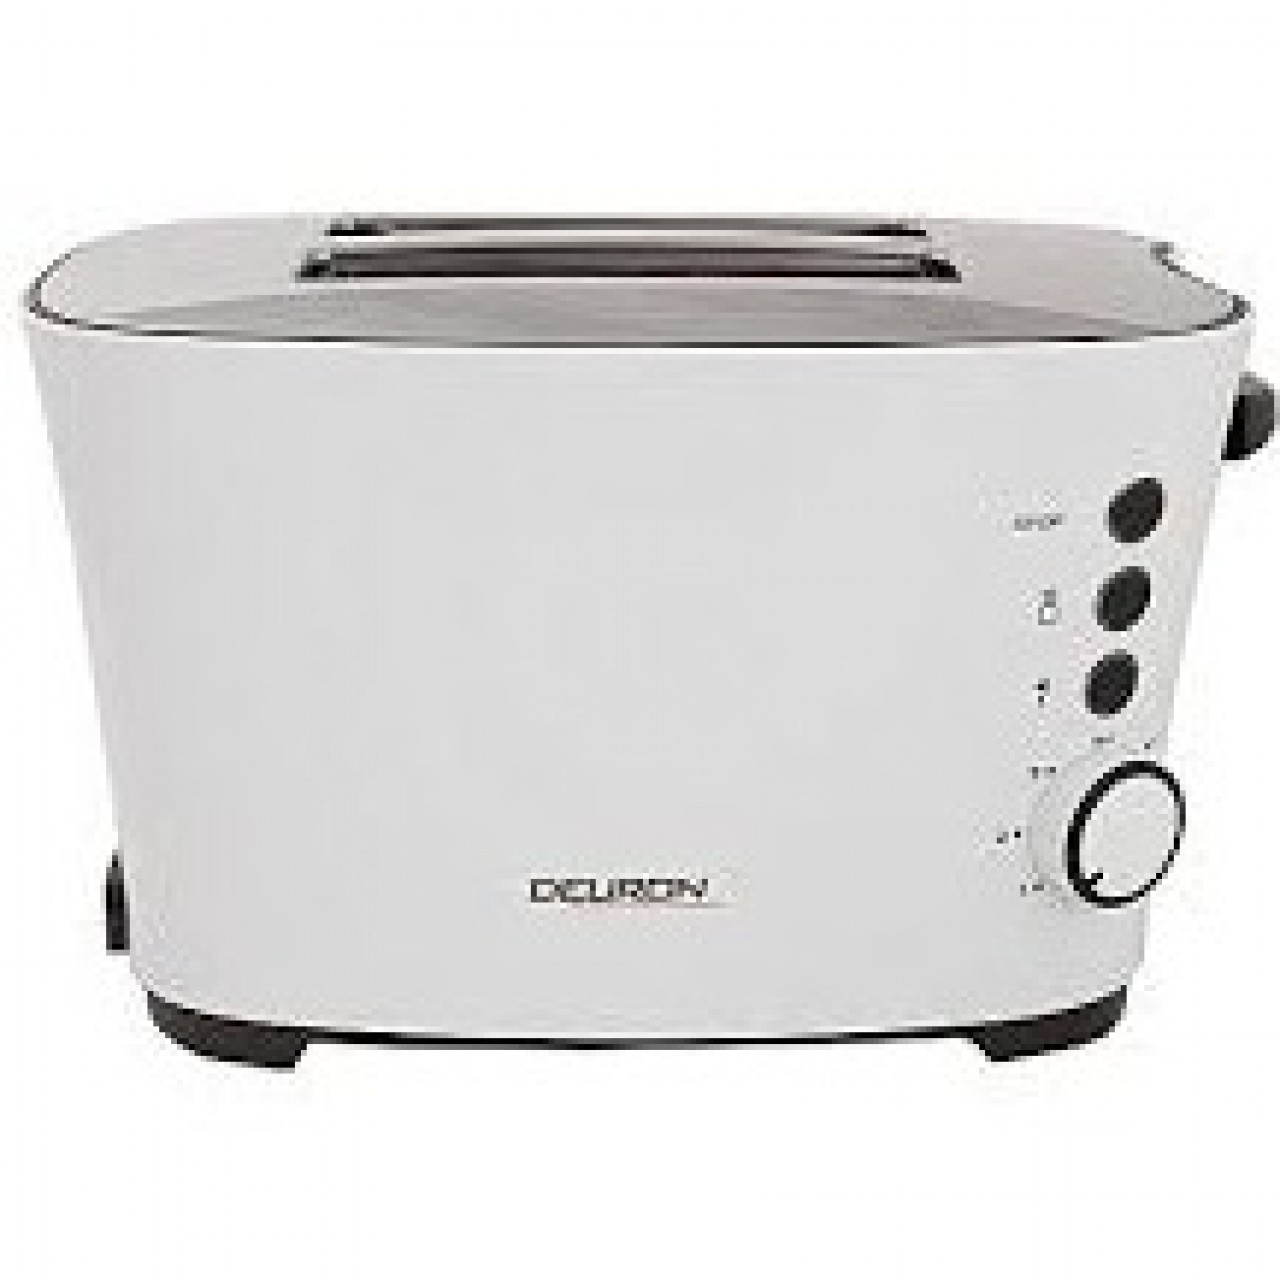 Deuron DN-704 Slice Toaster - Kitchen Appliances